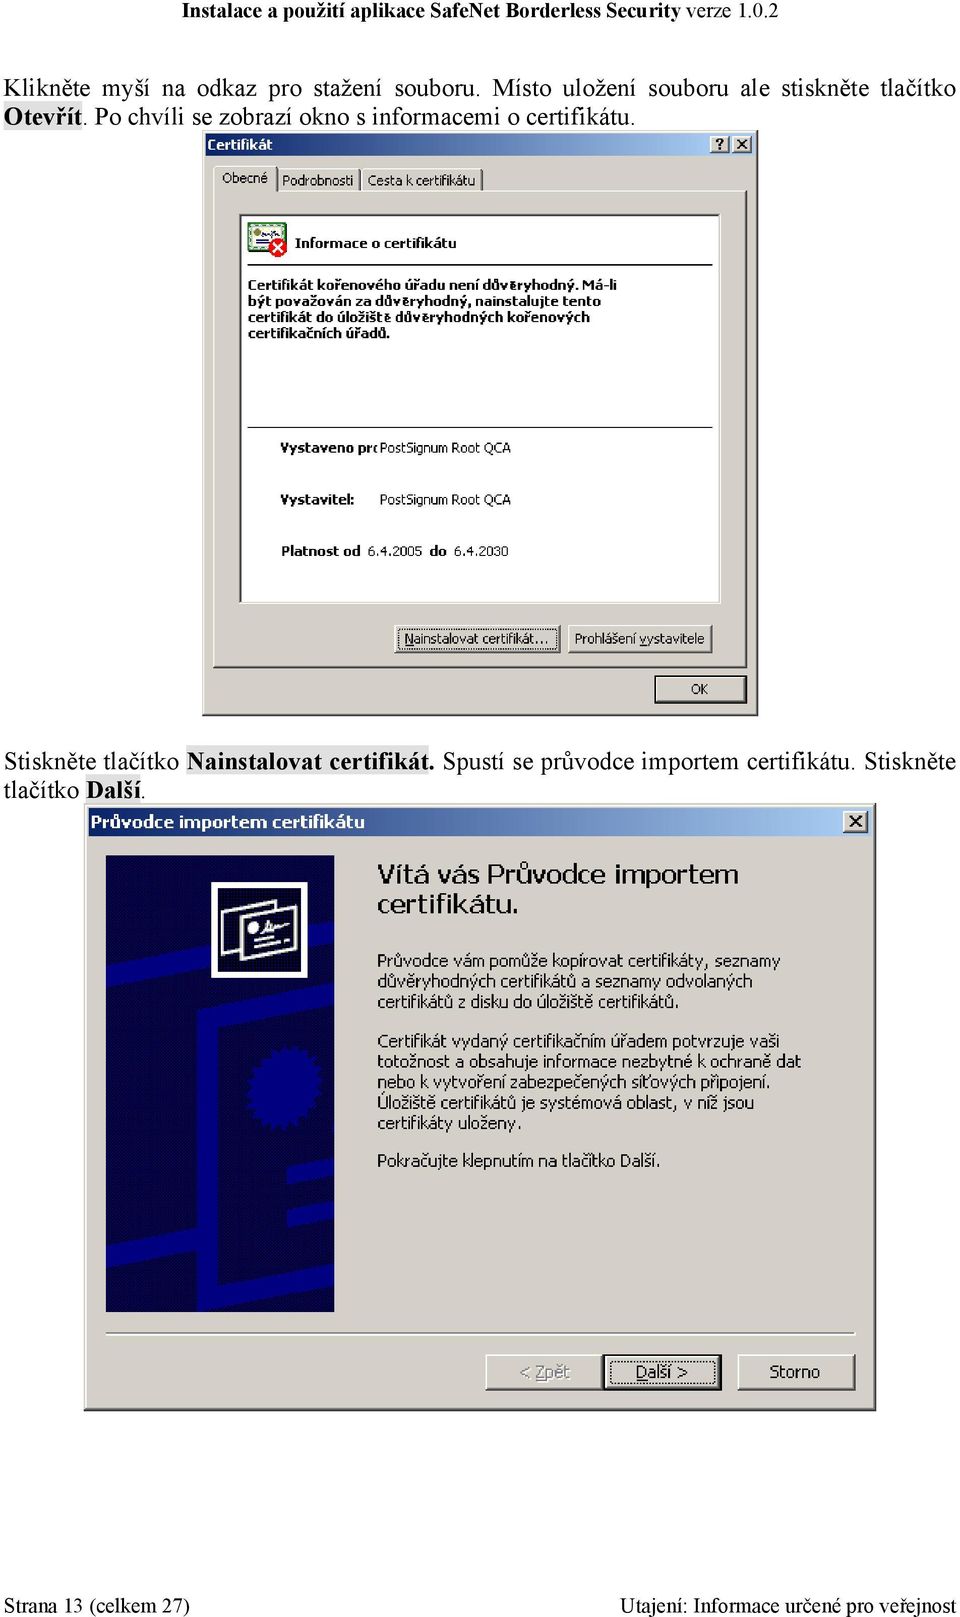 Po chvíli se zobrazí okno s informacemi o certifikátu.